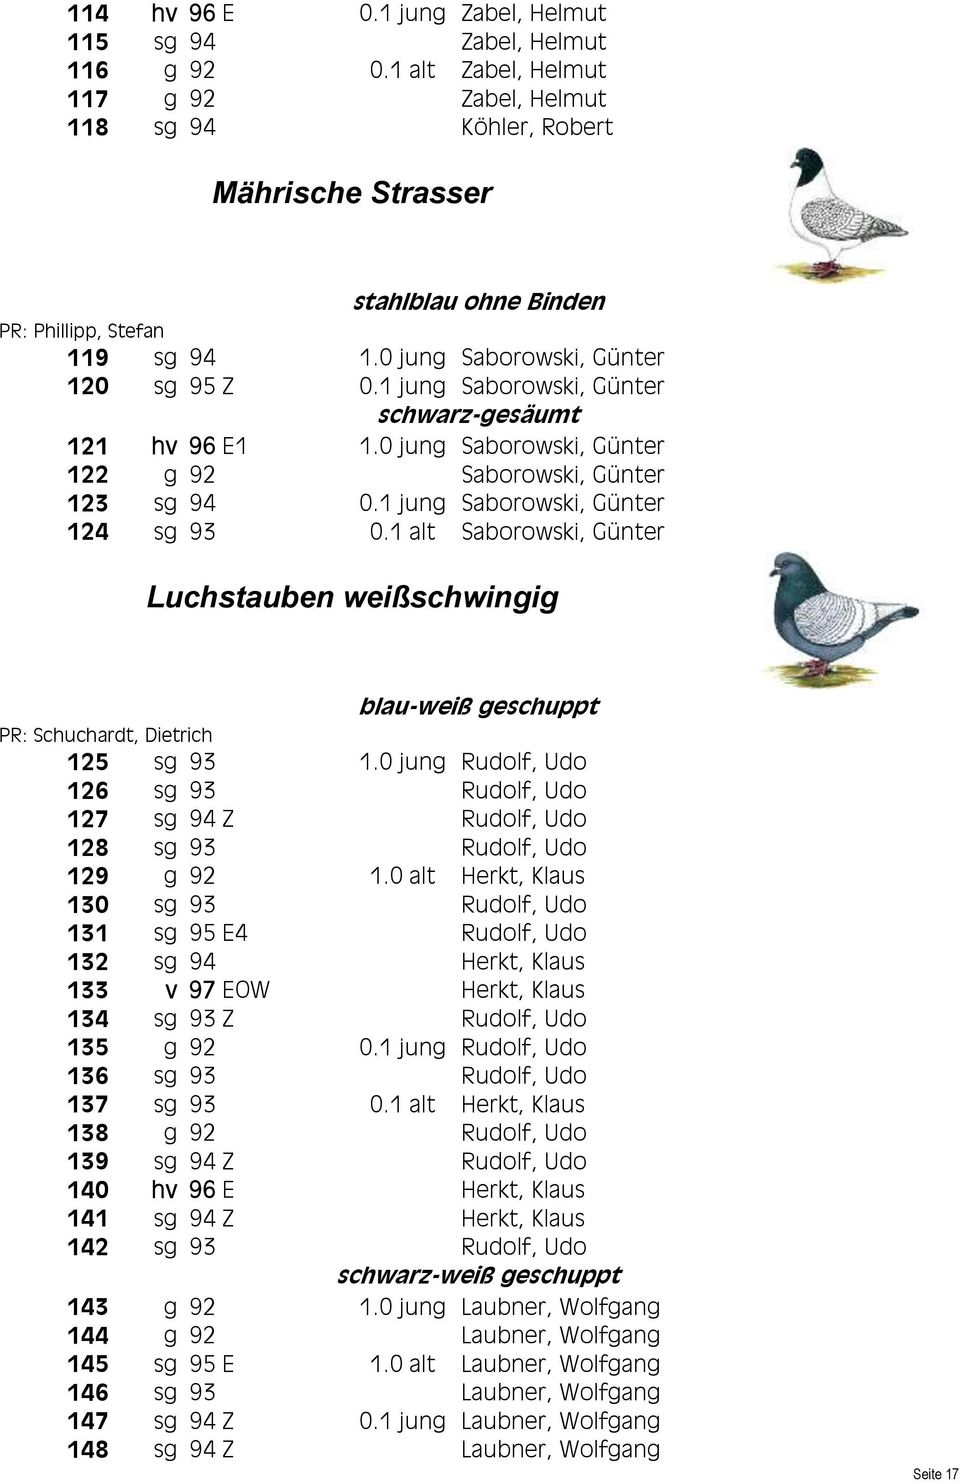 1 alt Saborowski, Günter Luchstauben weißschwingig blau-weiß geschuppt PR: Schuchardt, Dietrich 125 sg 93 1.